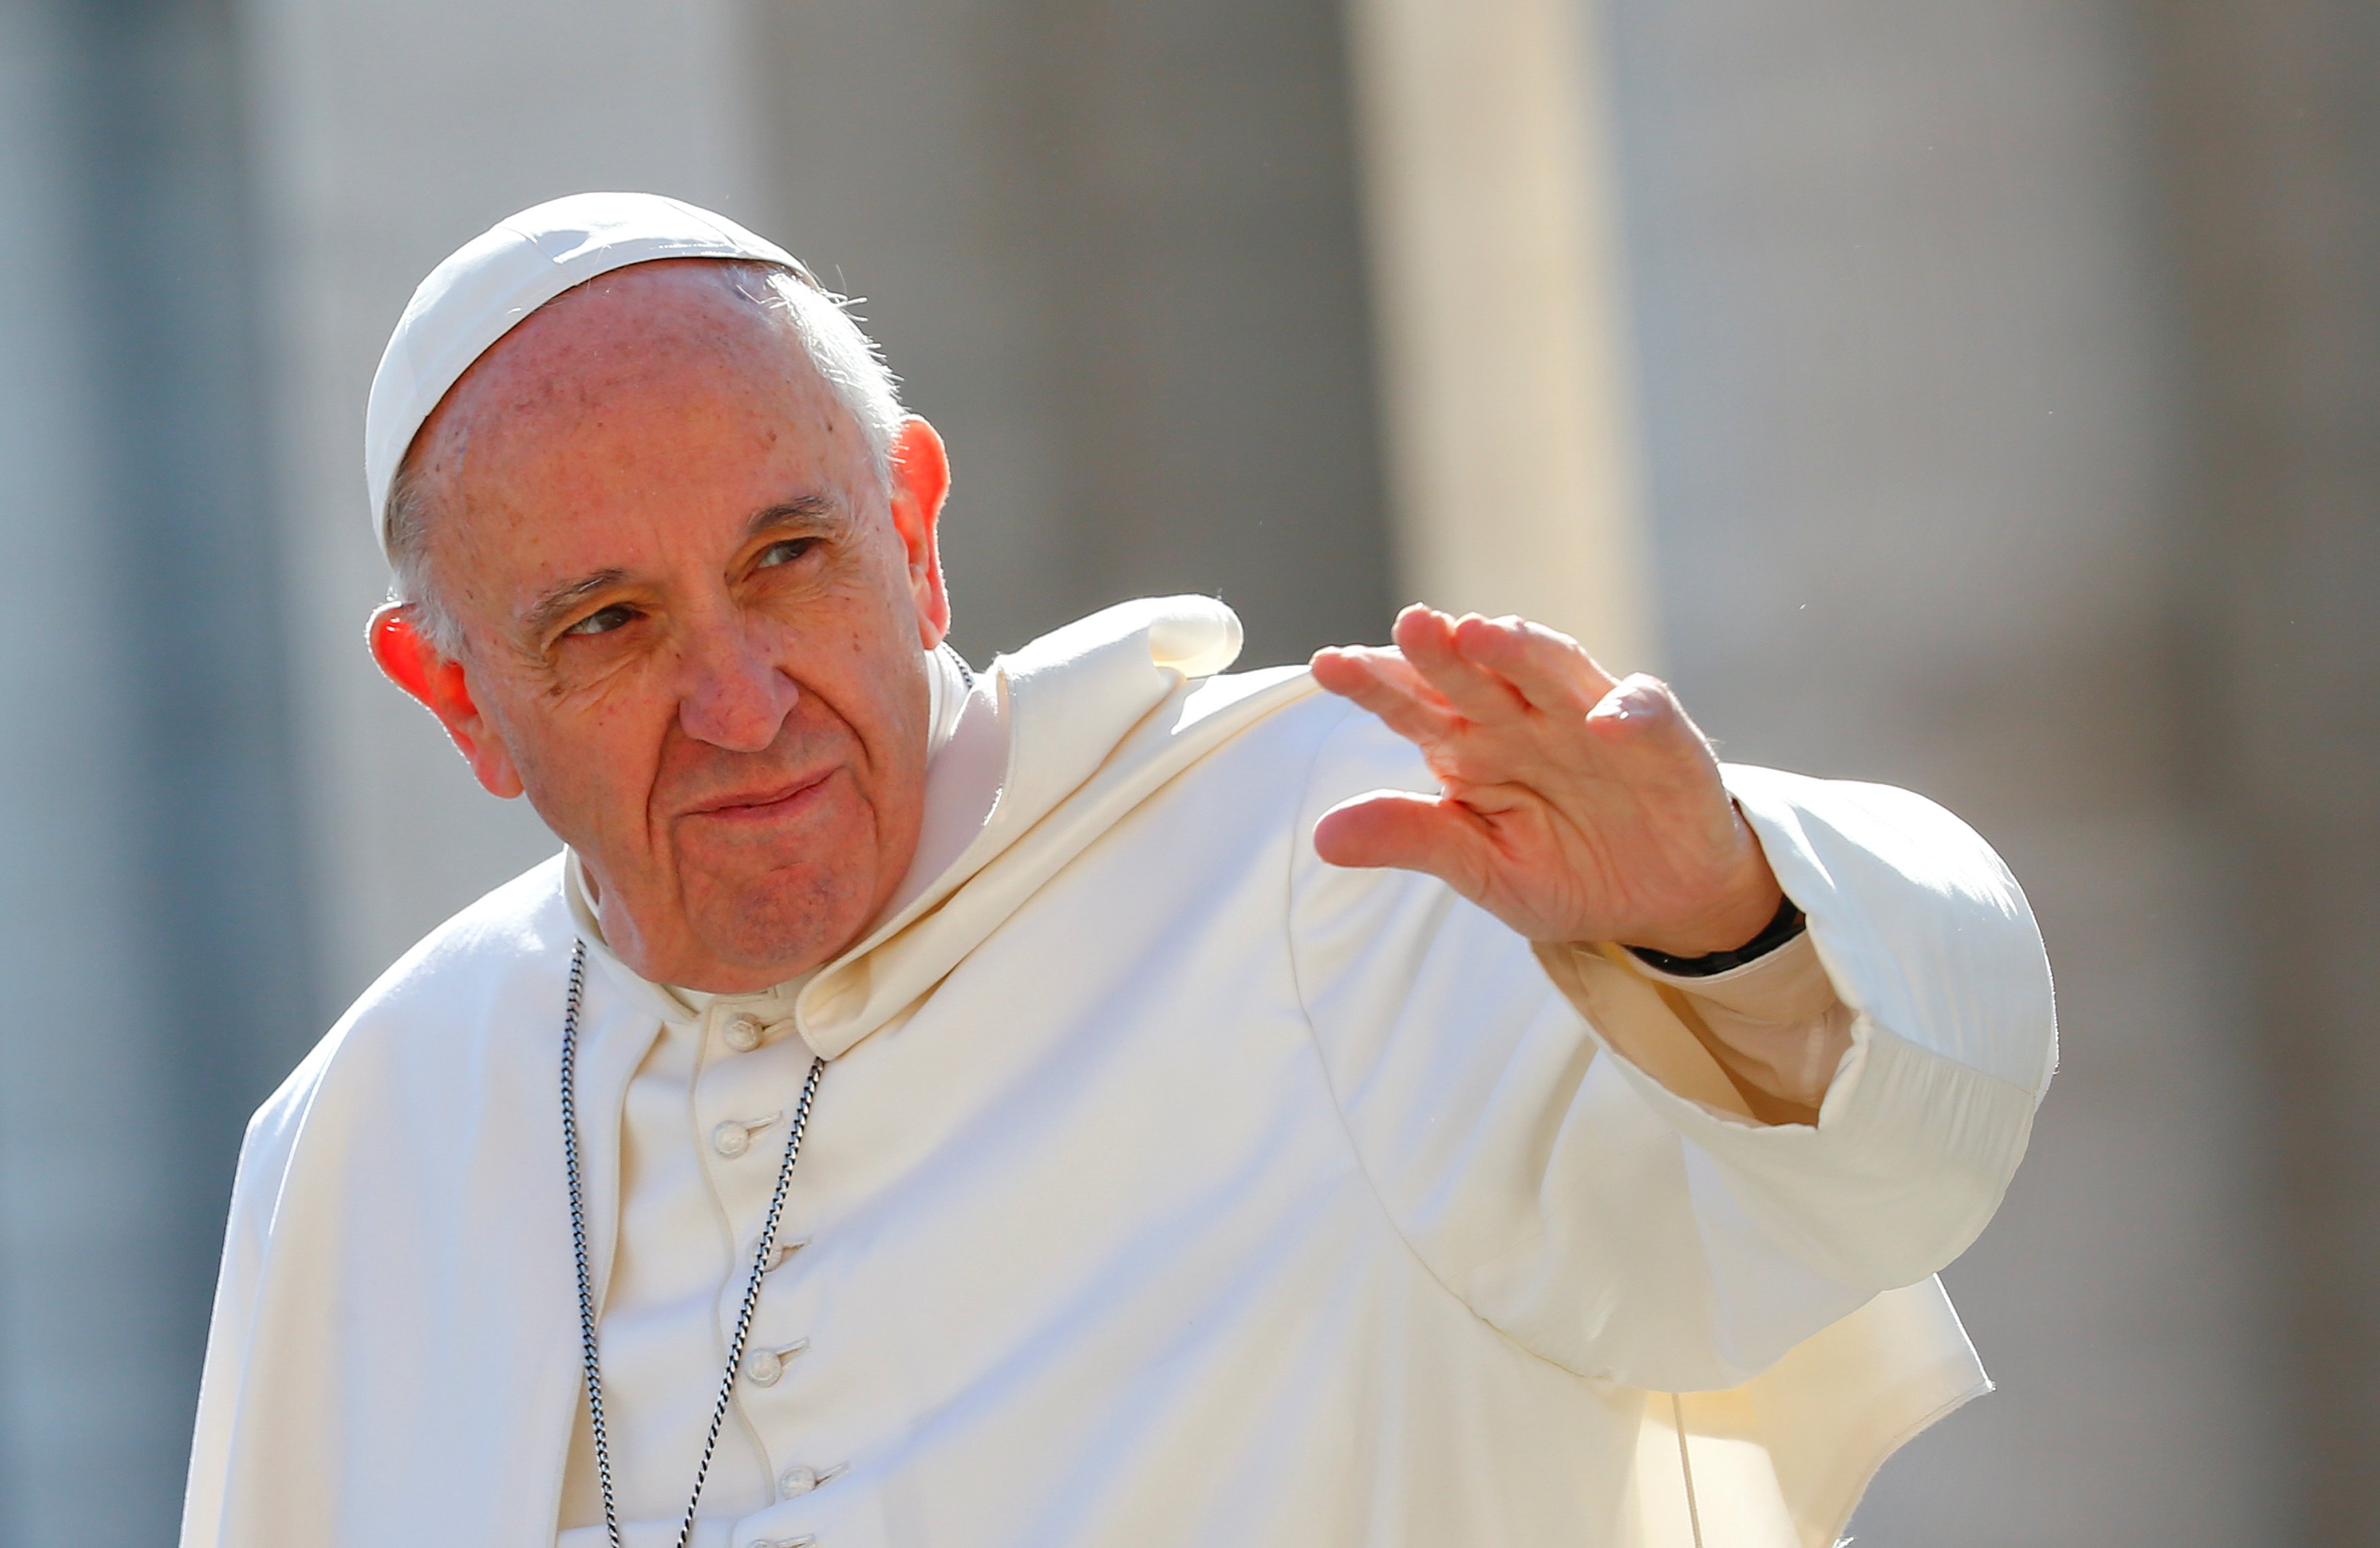 El Papa Francisco en la plaza San Pedro, en el Vaticano.REUTERS/Tony Gentile